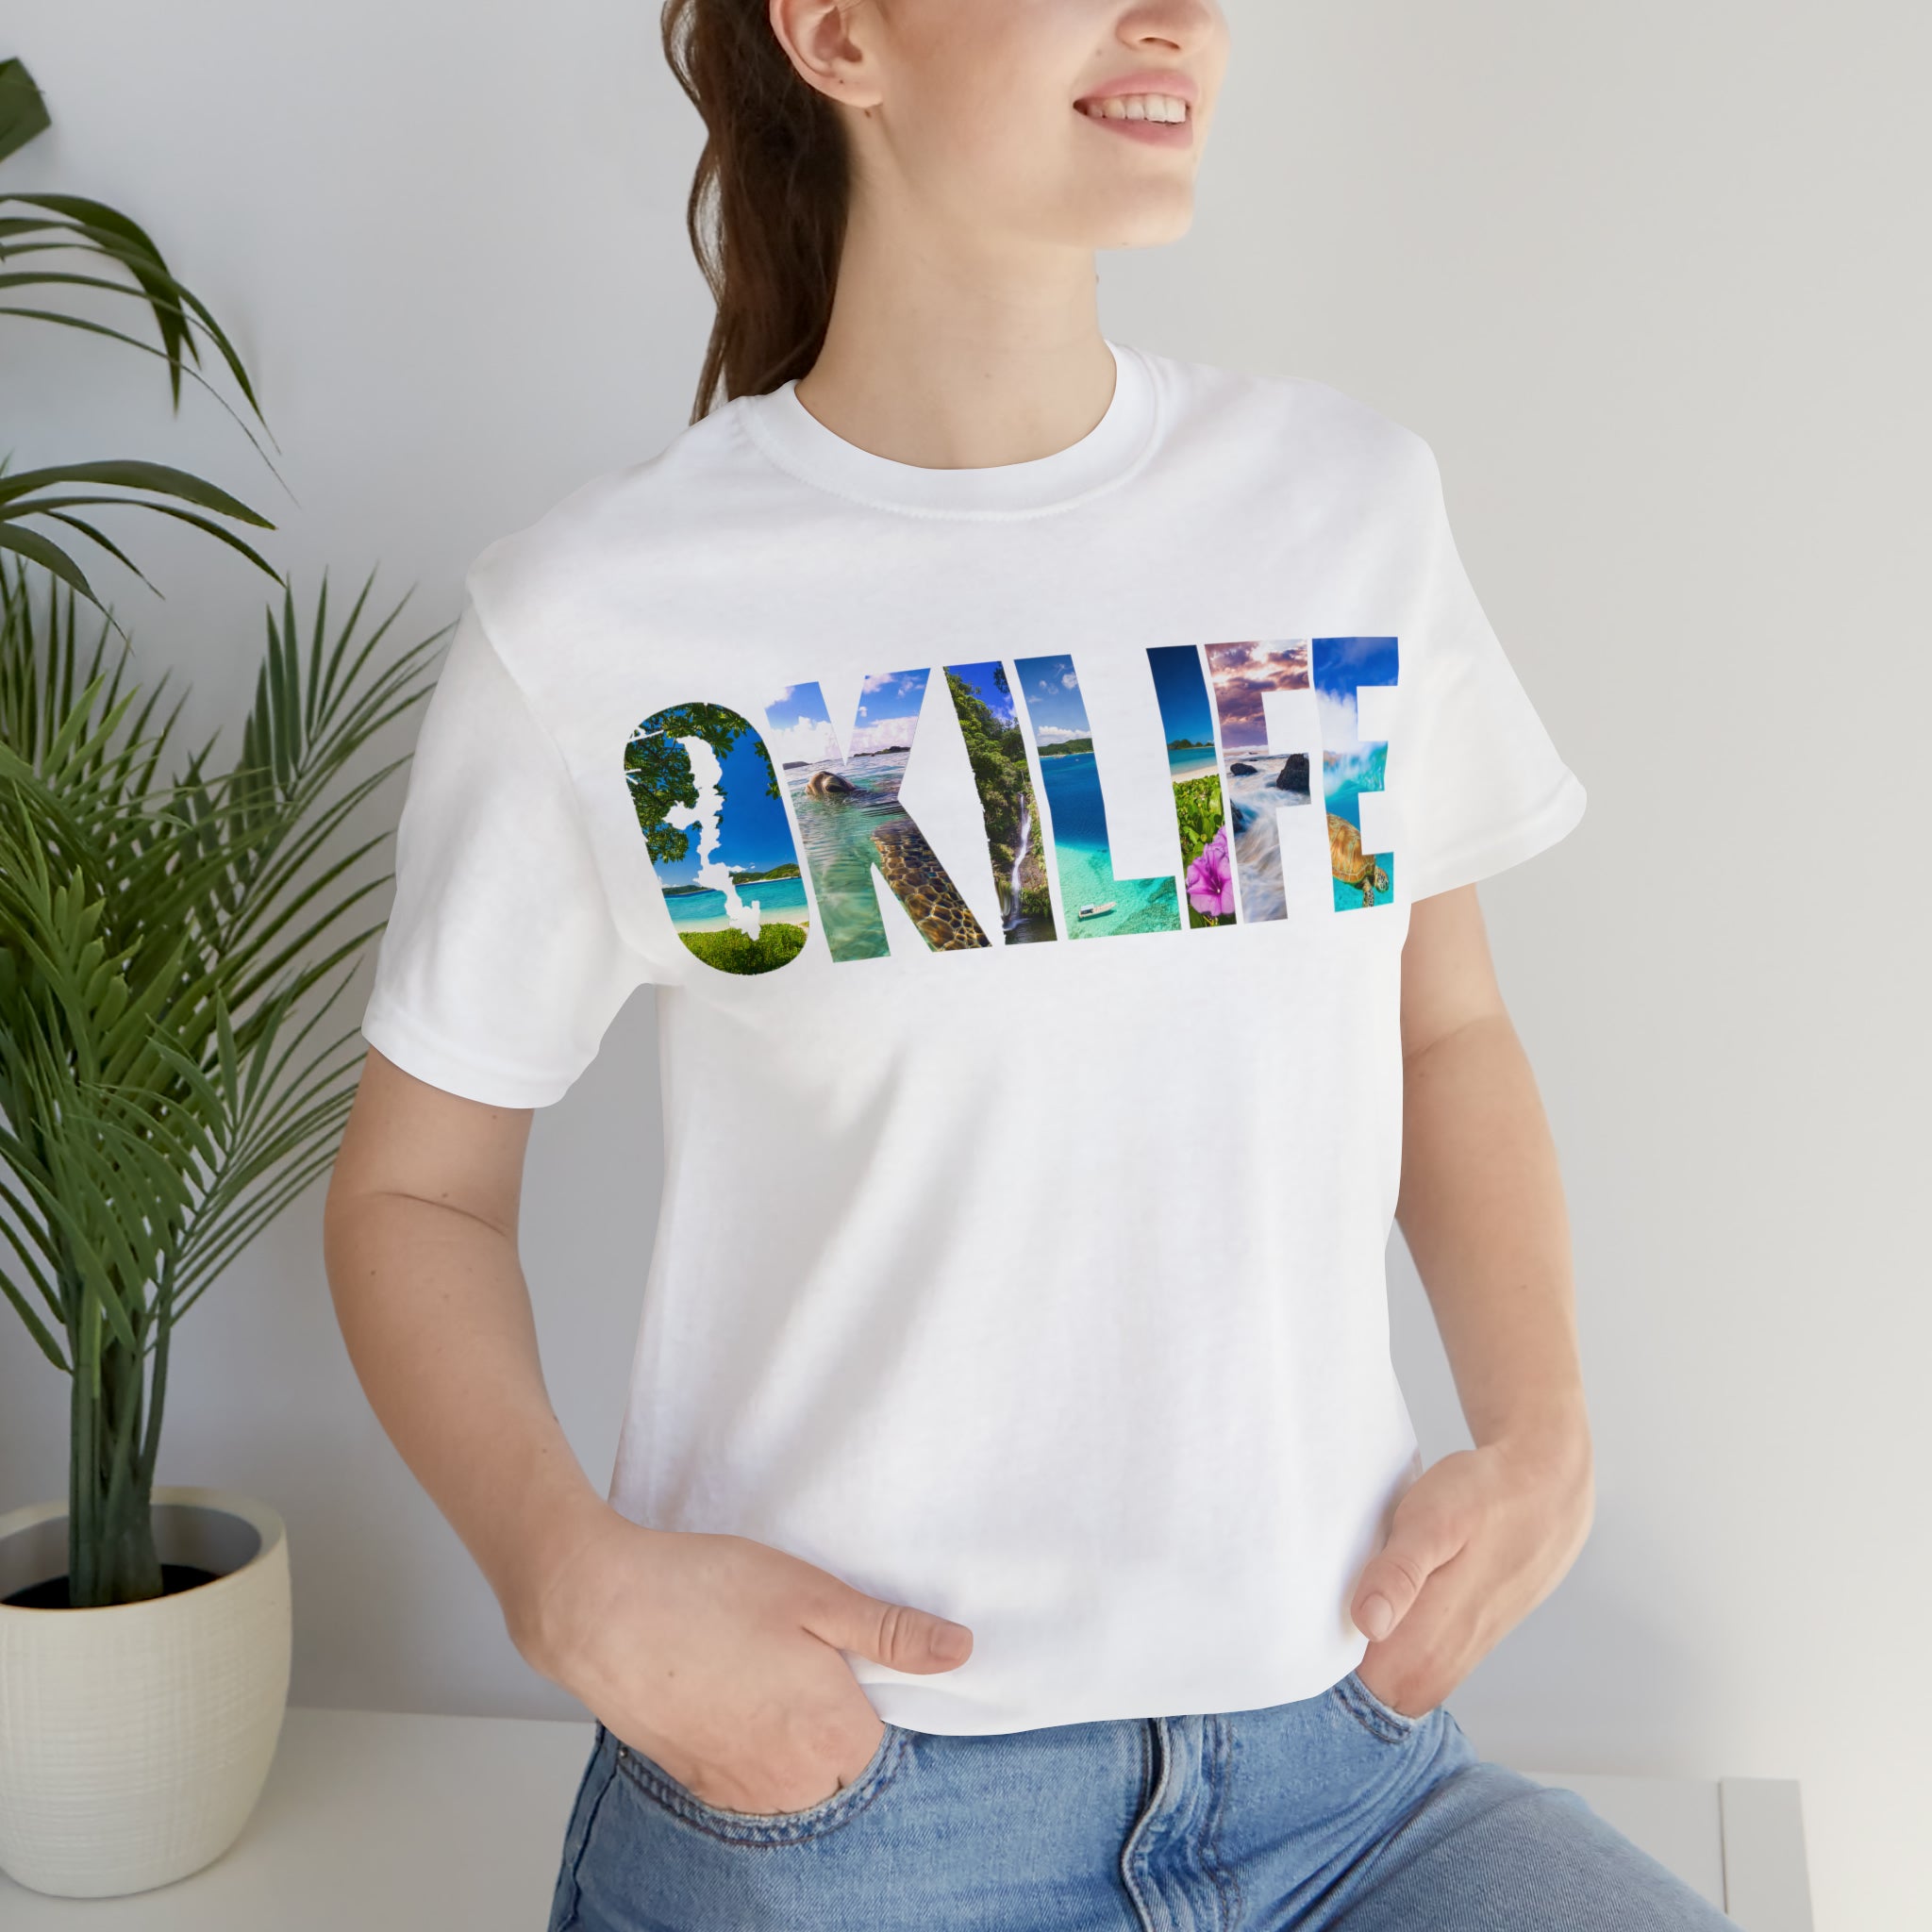 OkiLife Logo Unisex Short Sleeve Tee - OkiLife